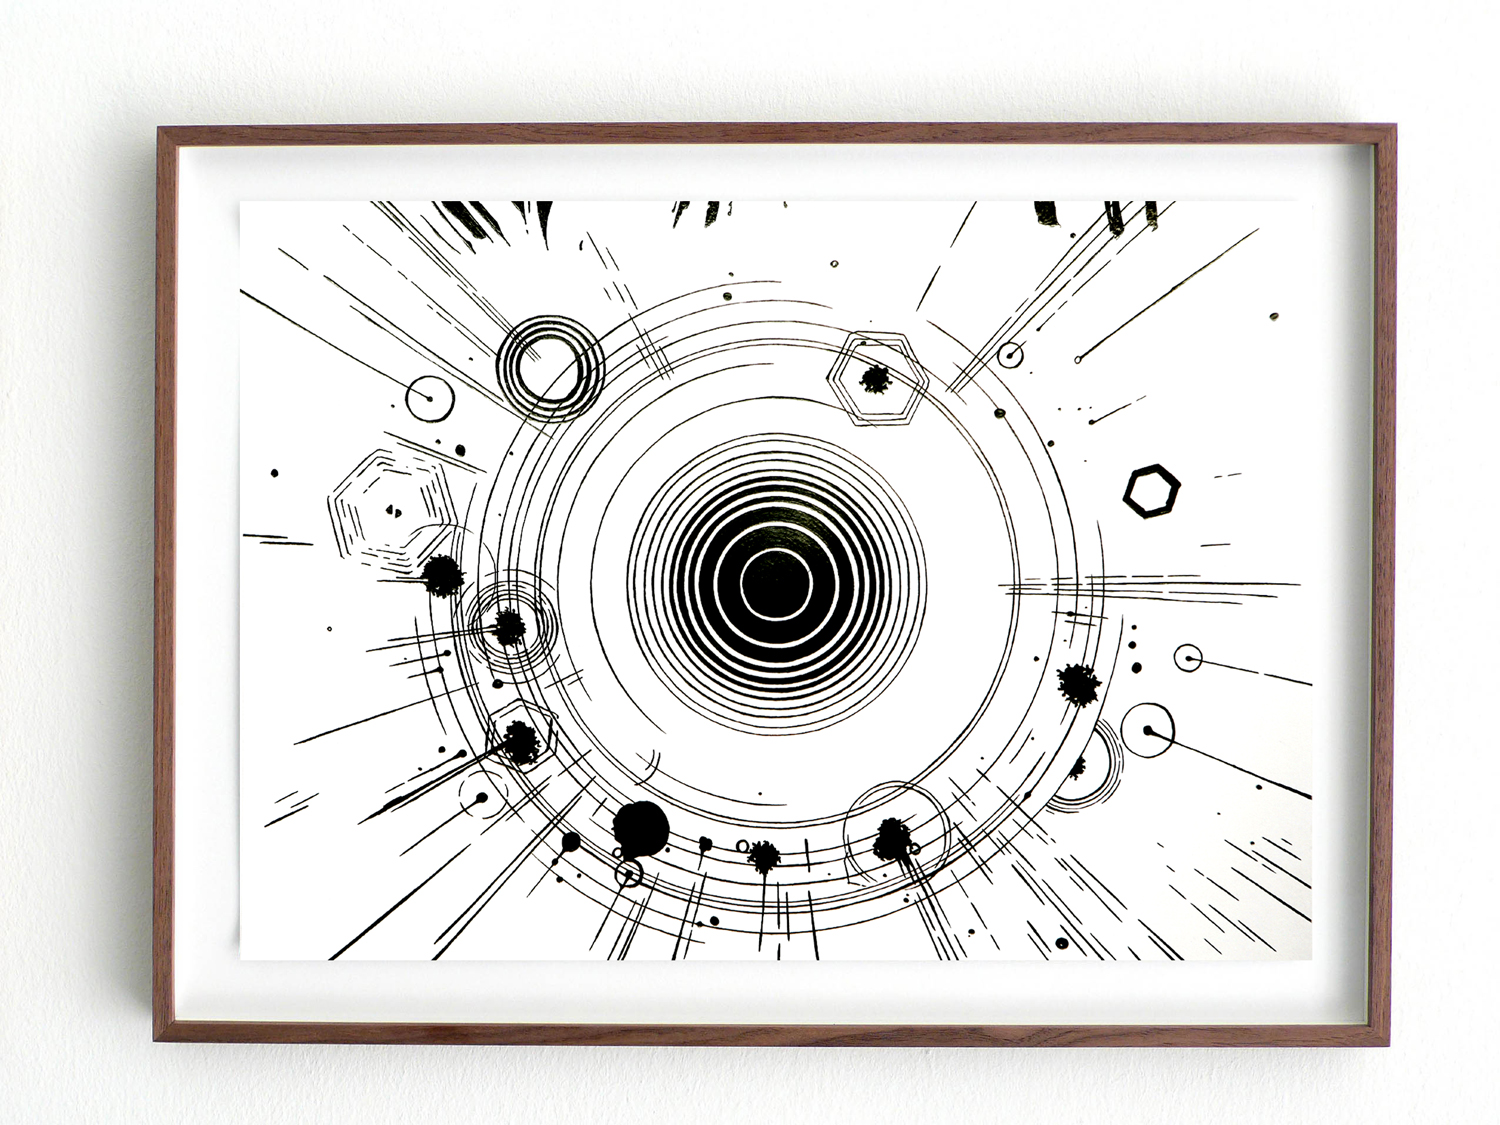   Vision/ noctec, 2008, pencil on paper, 29,7 x 42cm  